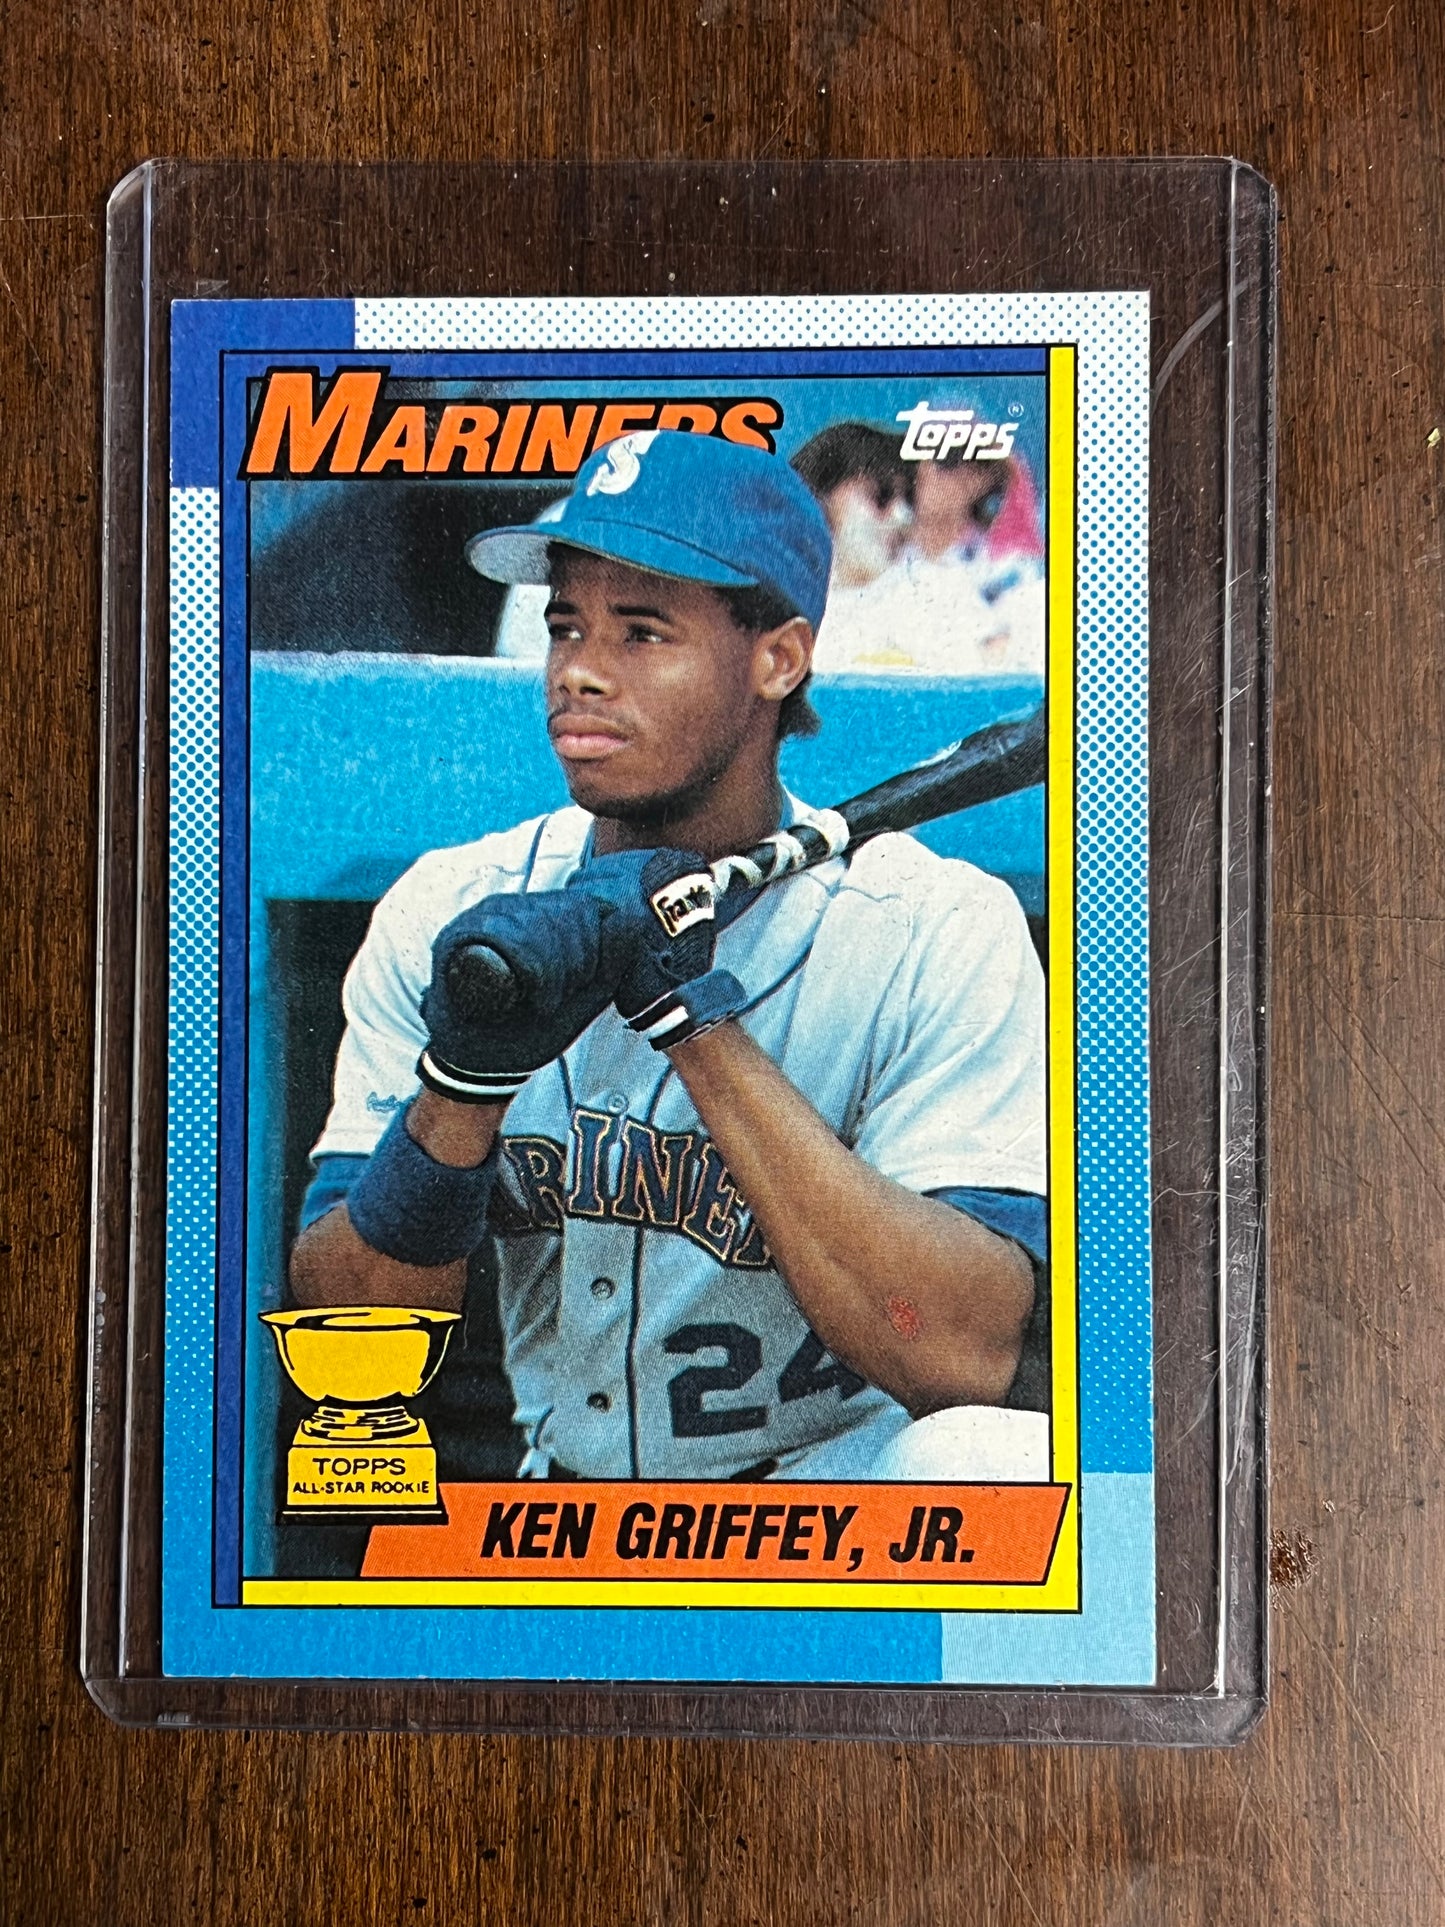 1990 Ken Griffey Jr. Topps All Star Rookie Card